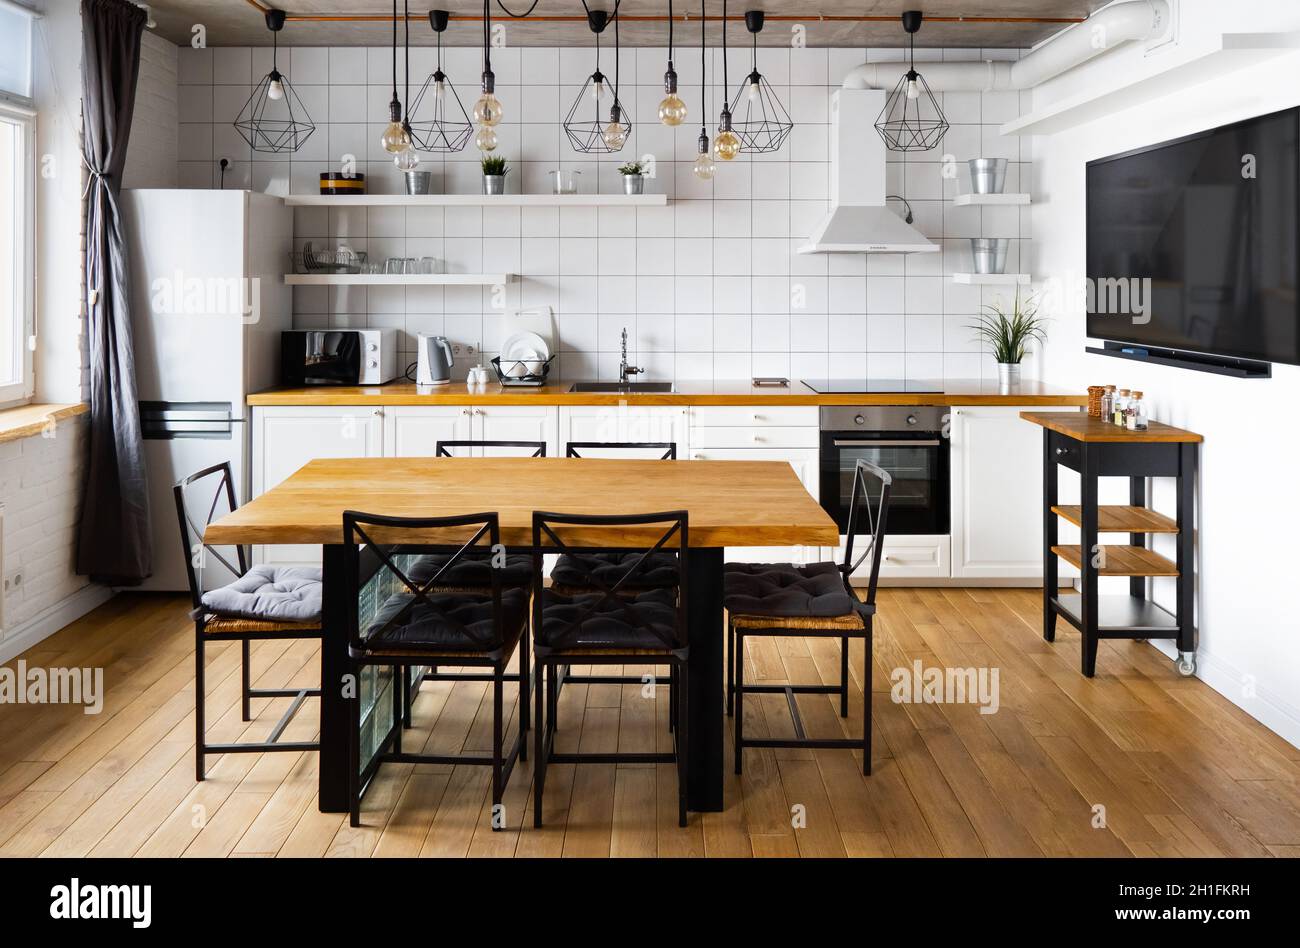 Un diseño interior de cocina comedor en estilo escandinavo moderno con una  gran mesa de madera y sillas contra pisos de madera clara, paredes y  muebles blancos brillantes Fotografía de stock -